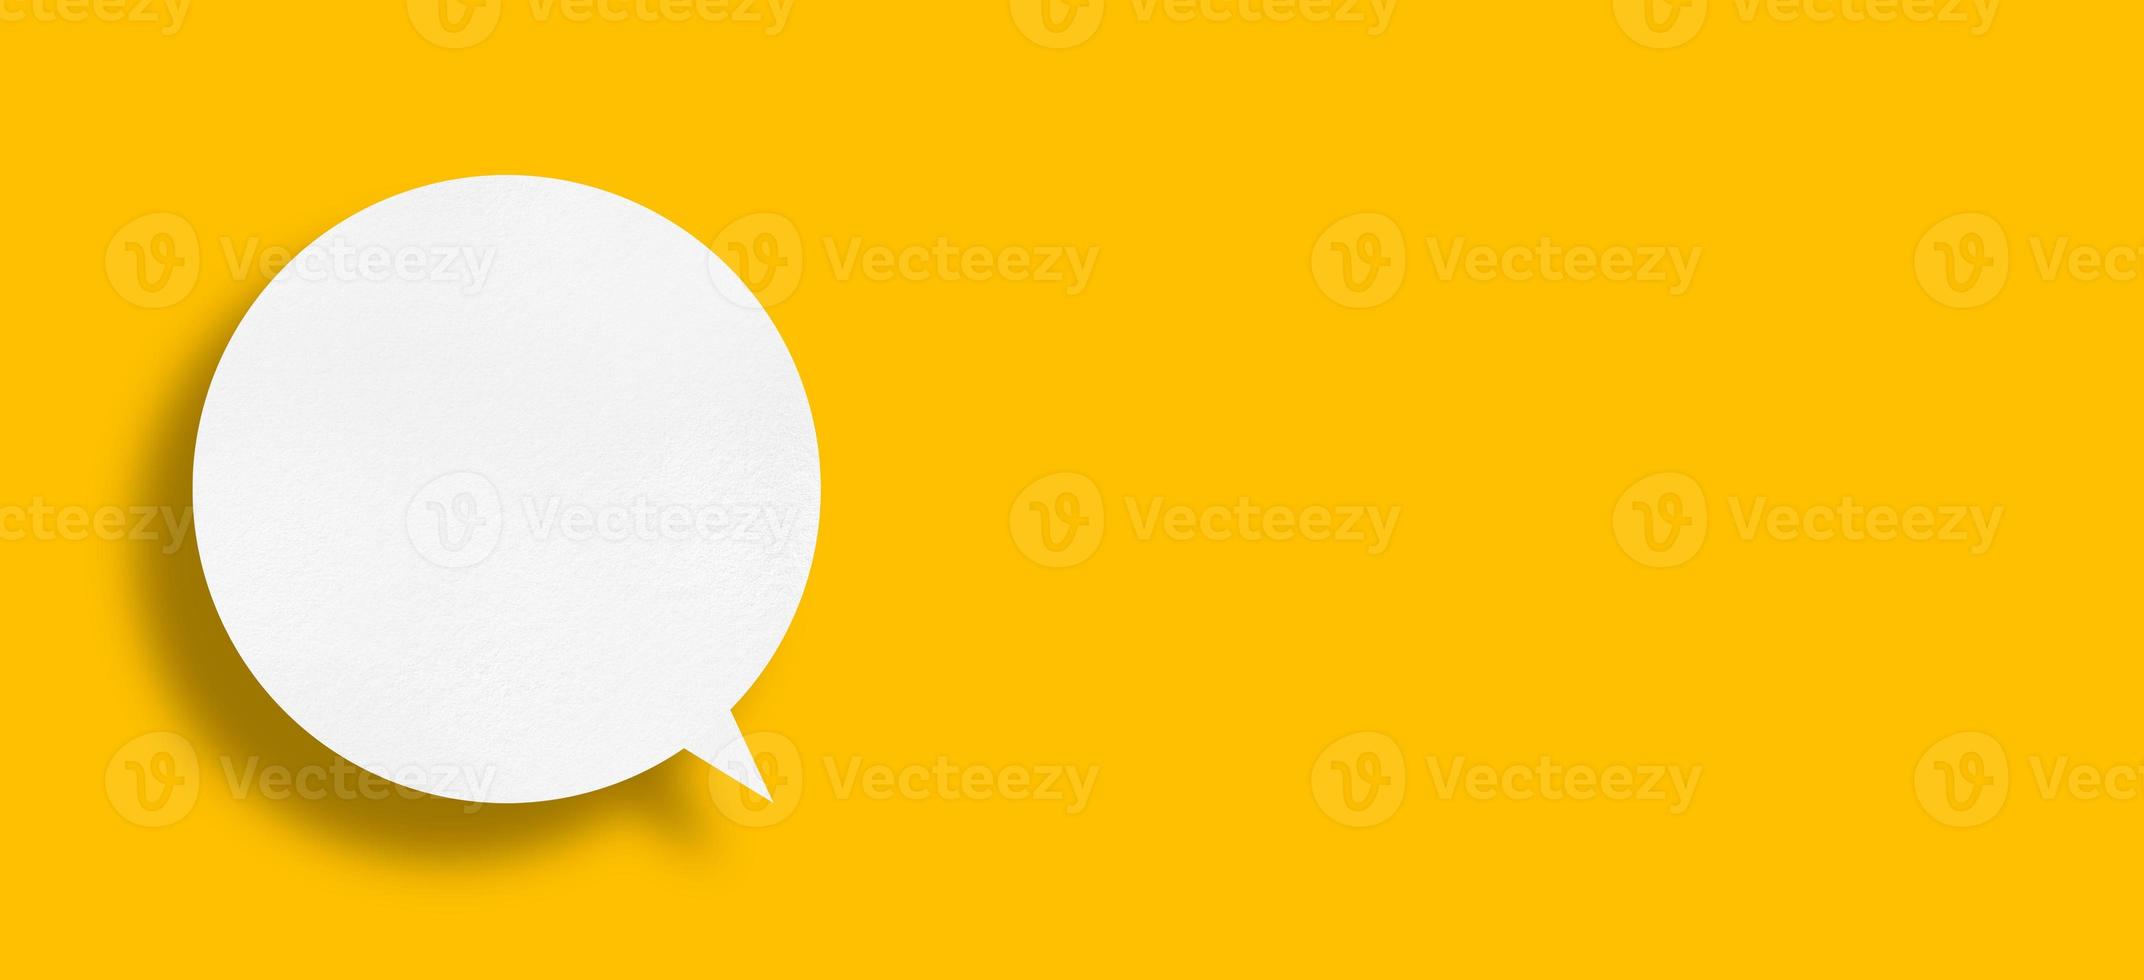 Witboek in de vorm van een tekstballon tegen een gele achtergrond. foto